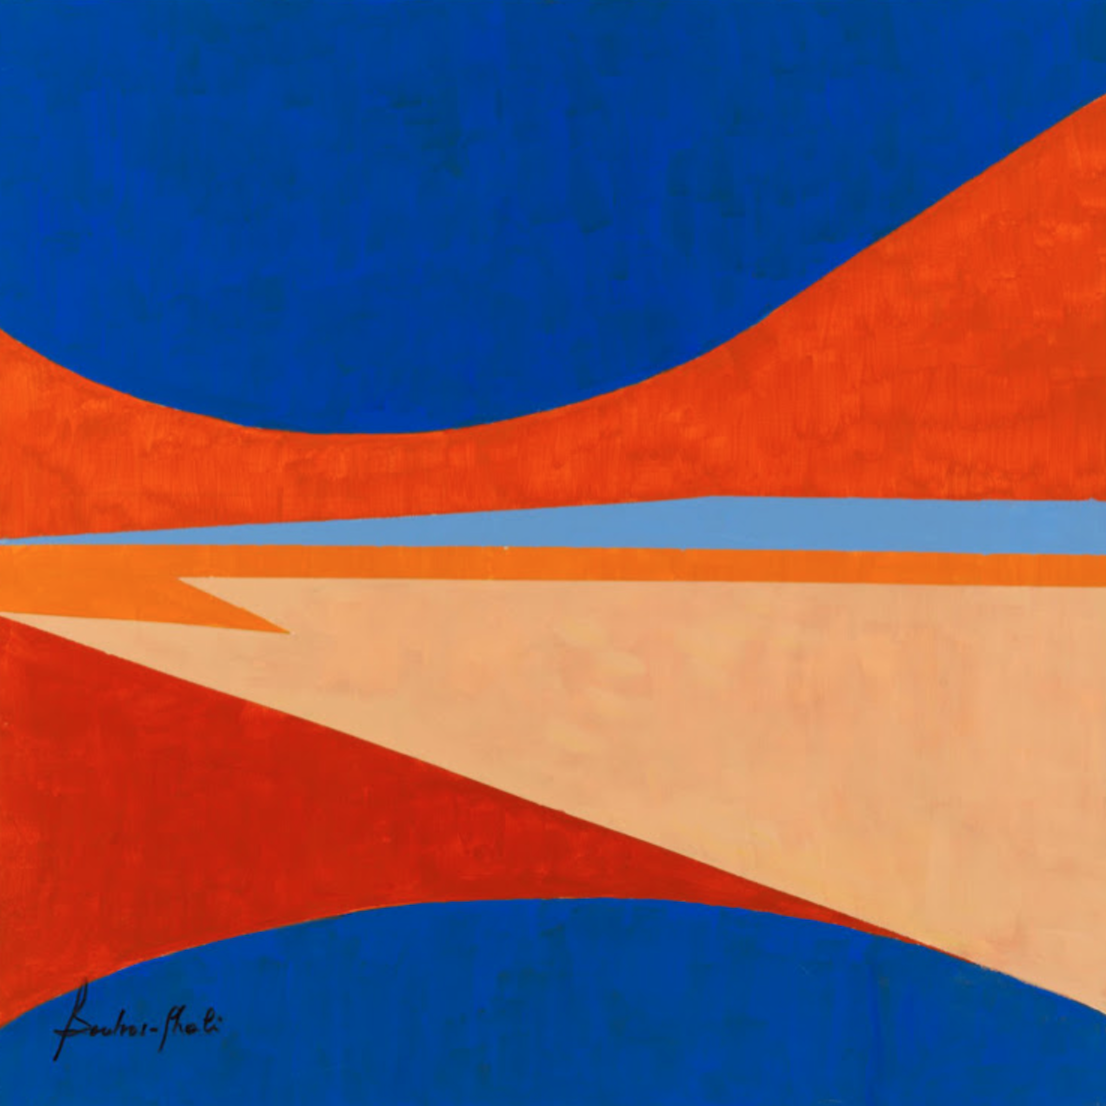 WASSEF BOUTROS - GHALI, Untitled, 2015, Acryl auf Leinwand, 38 x 38 inches | 96.5 x 96.5 cm